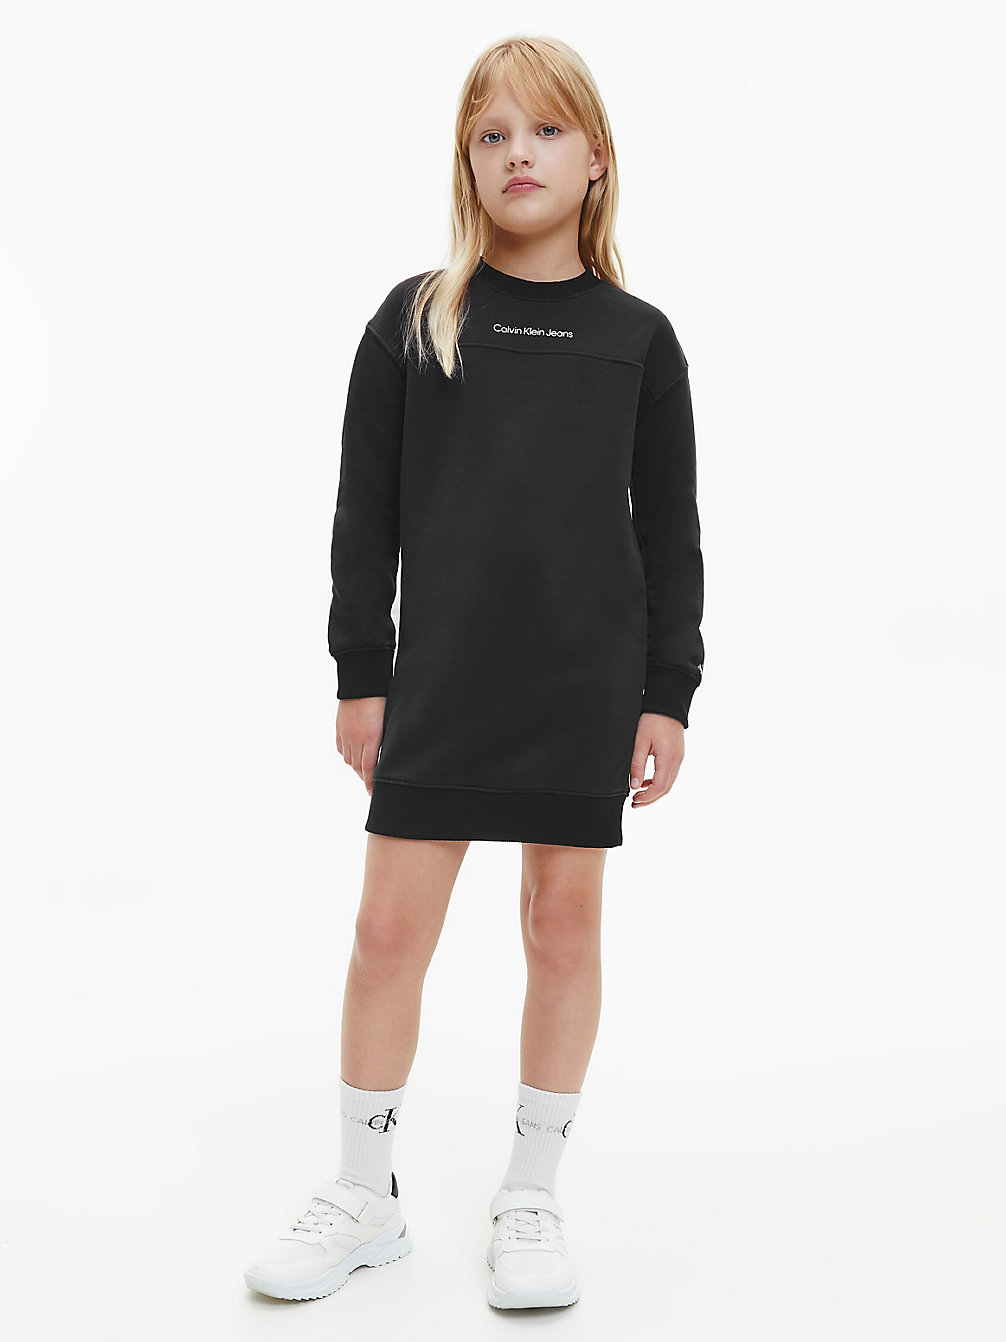 CK BLACK > Sweatshirtkleid > undefined Maedchen - Calvin Klein